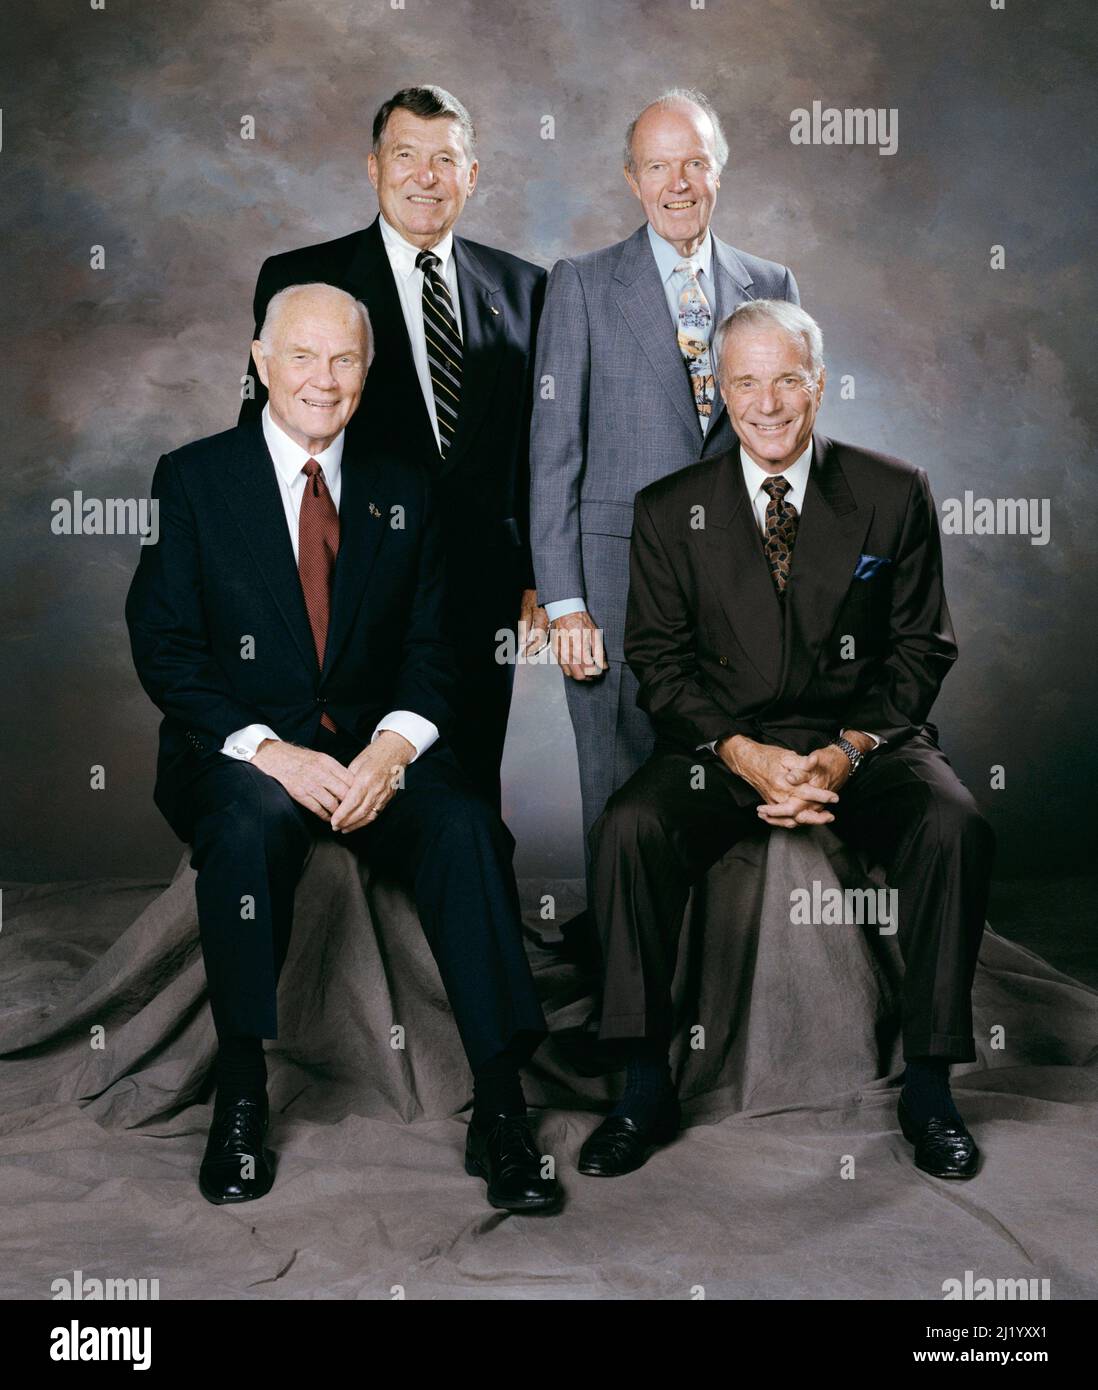 Les quatre autres des sept atronautes de Mercury dans une photo prise au service commémoratif d'Alan Shepard en 1998. De gauche à droite : John Glenn, Walter Schirra, Gordon Cooper et Scott Carpenter. Banque D'Images